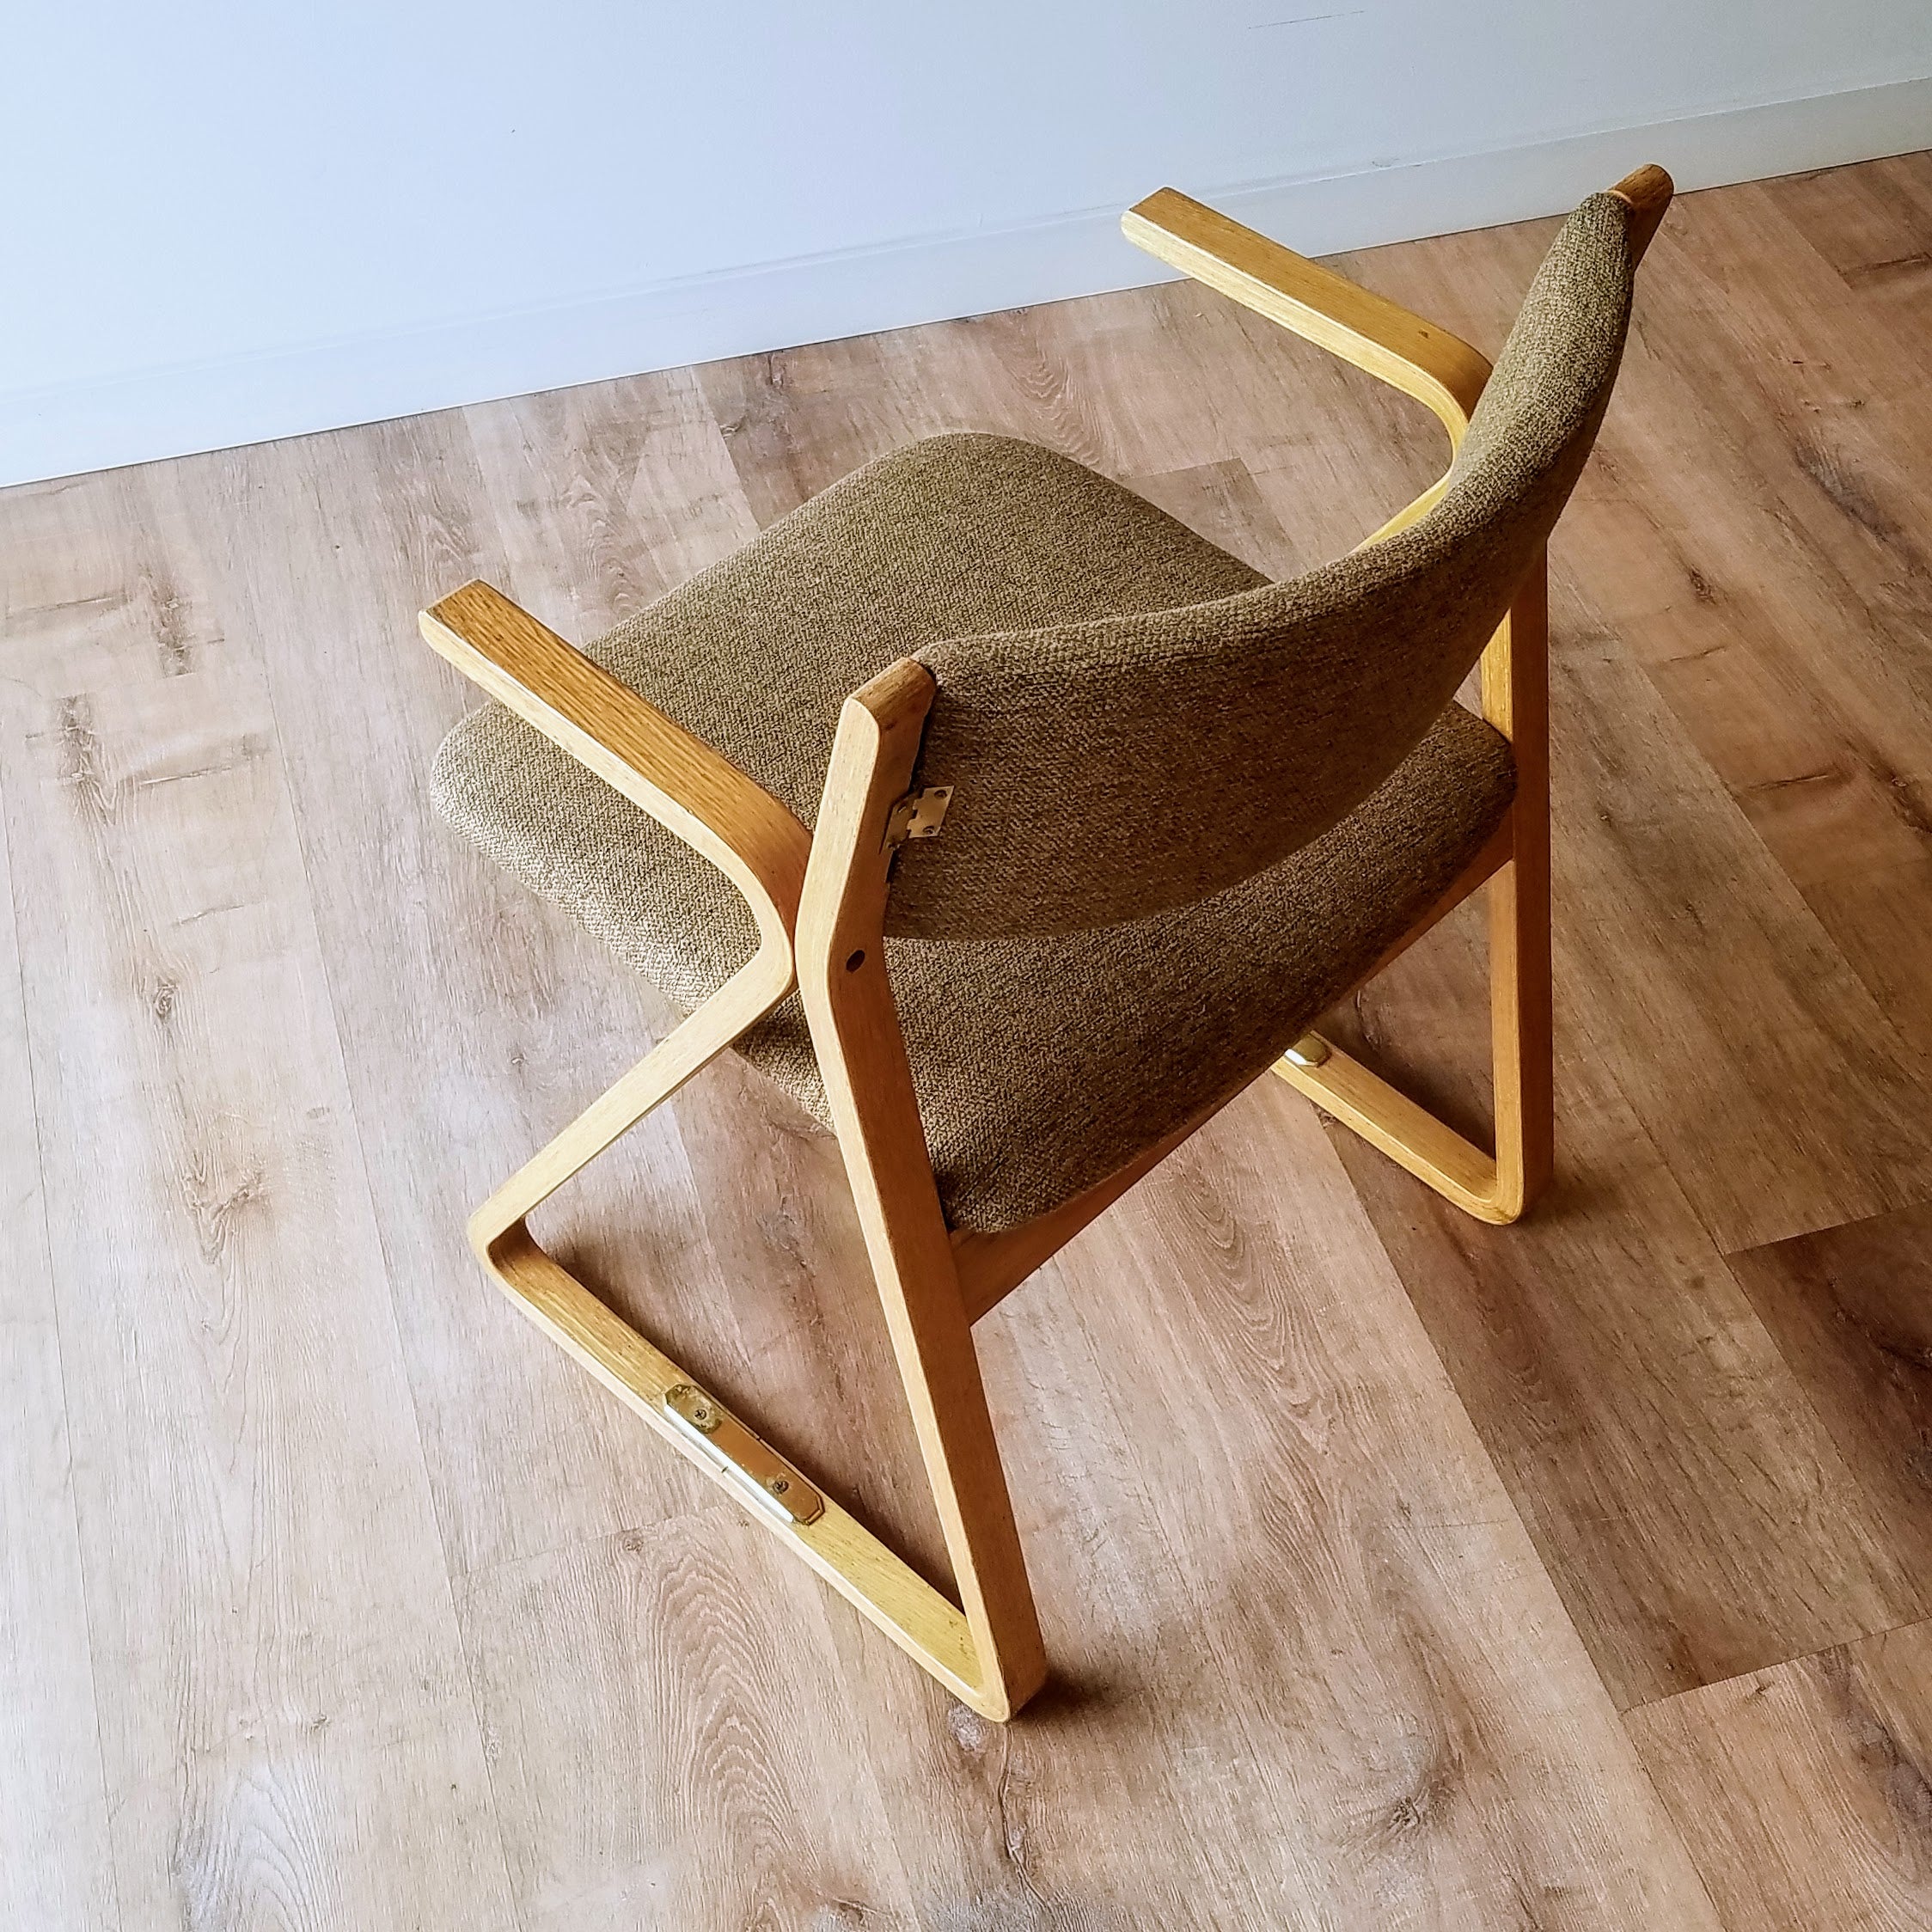 Robert DeFuccio 'Triangle' Chair